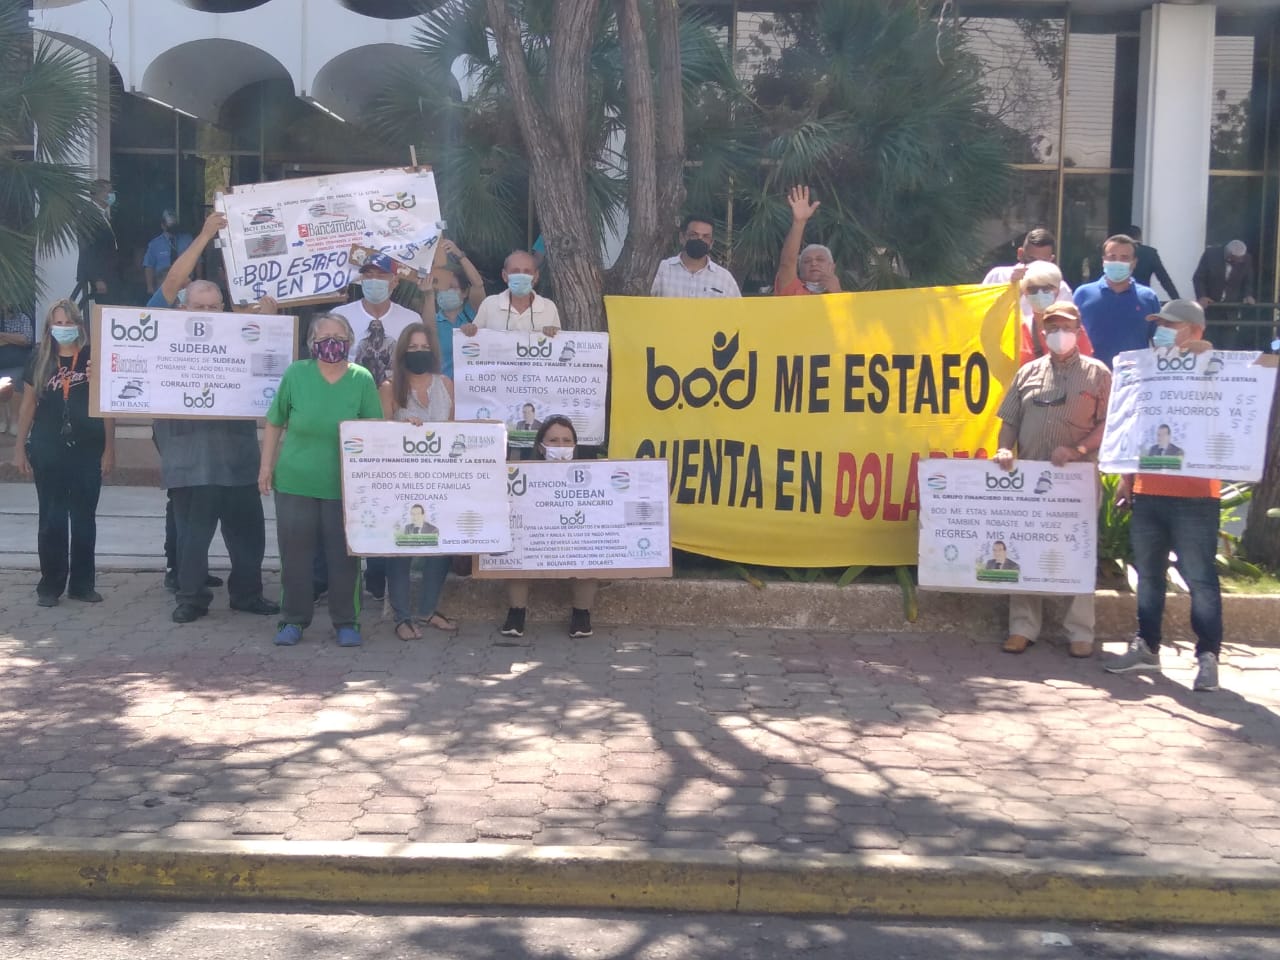 Encadenados! Clientes del BOD protestaron en 5 de julio en rechazo al «corralito» bancario - Qué Pasa